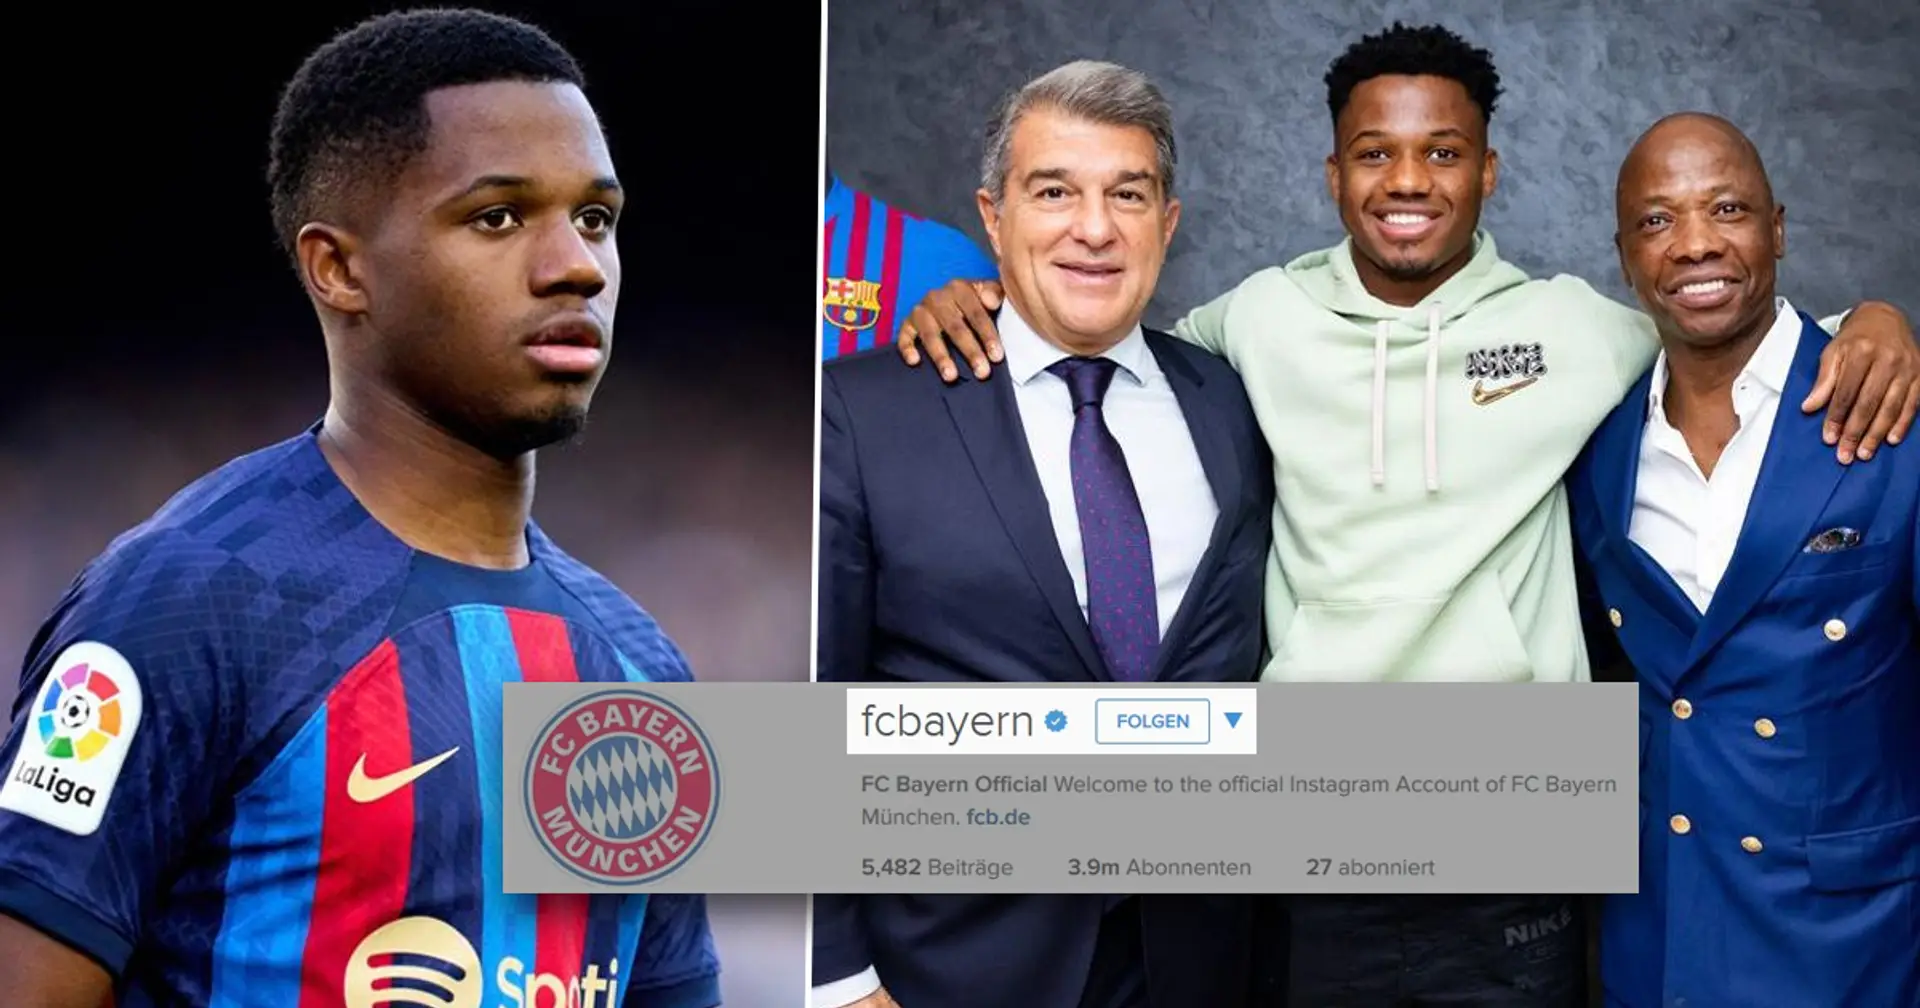 Vater von Ansu Fati attackiert Barcas Vereinsführung und folgt FC Bayern auf Instagram - was ist da los?